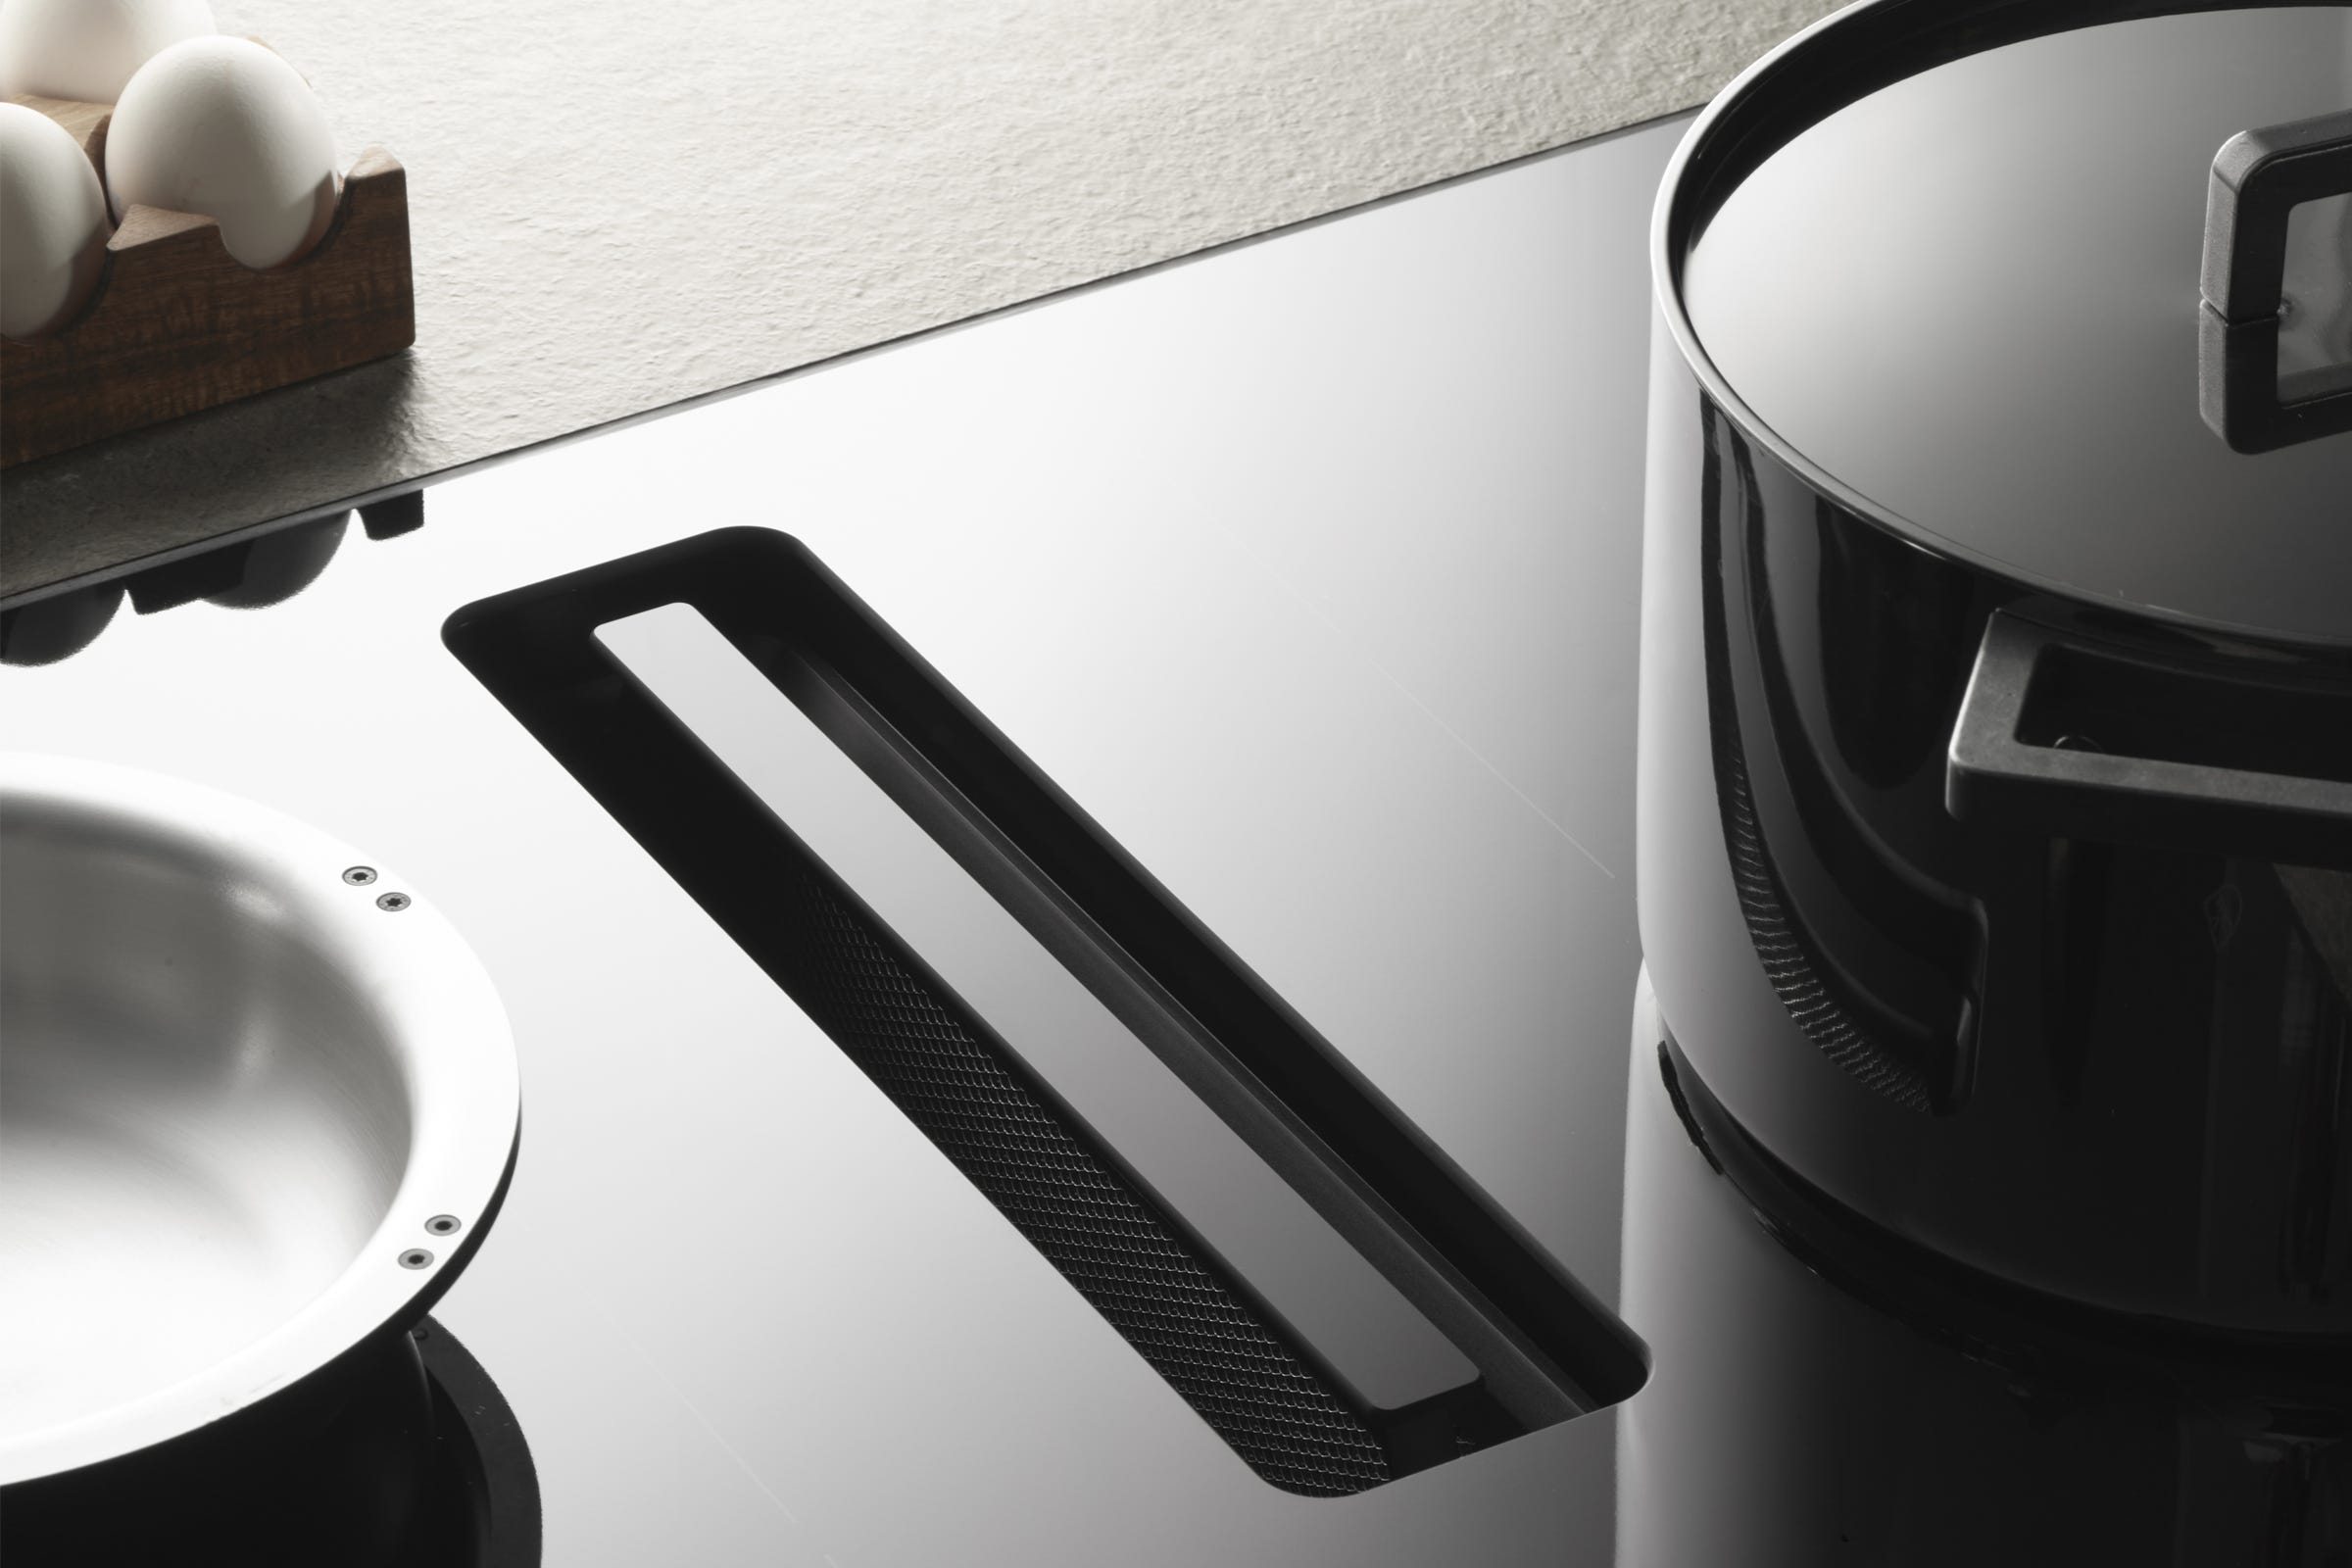 CombiCook Top il sistema integrato V-Zug per cucine eleganti e intelligenti